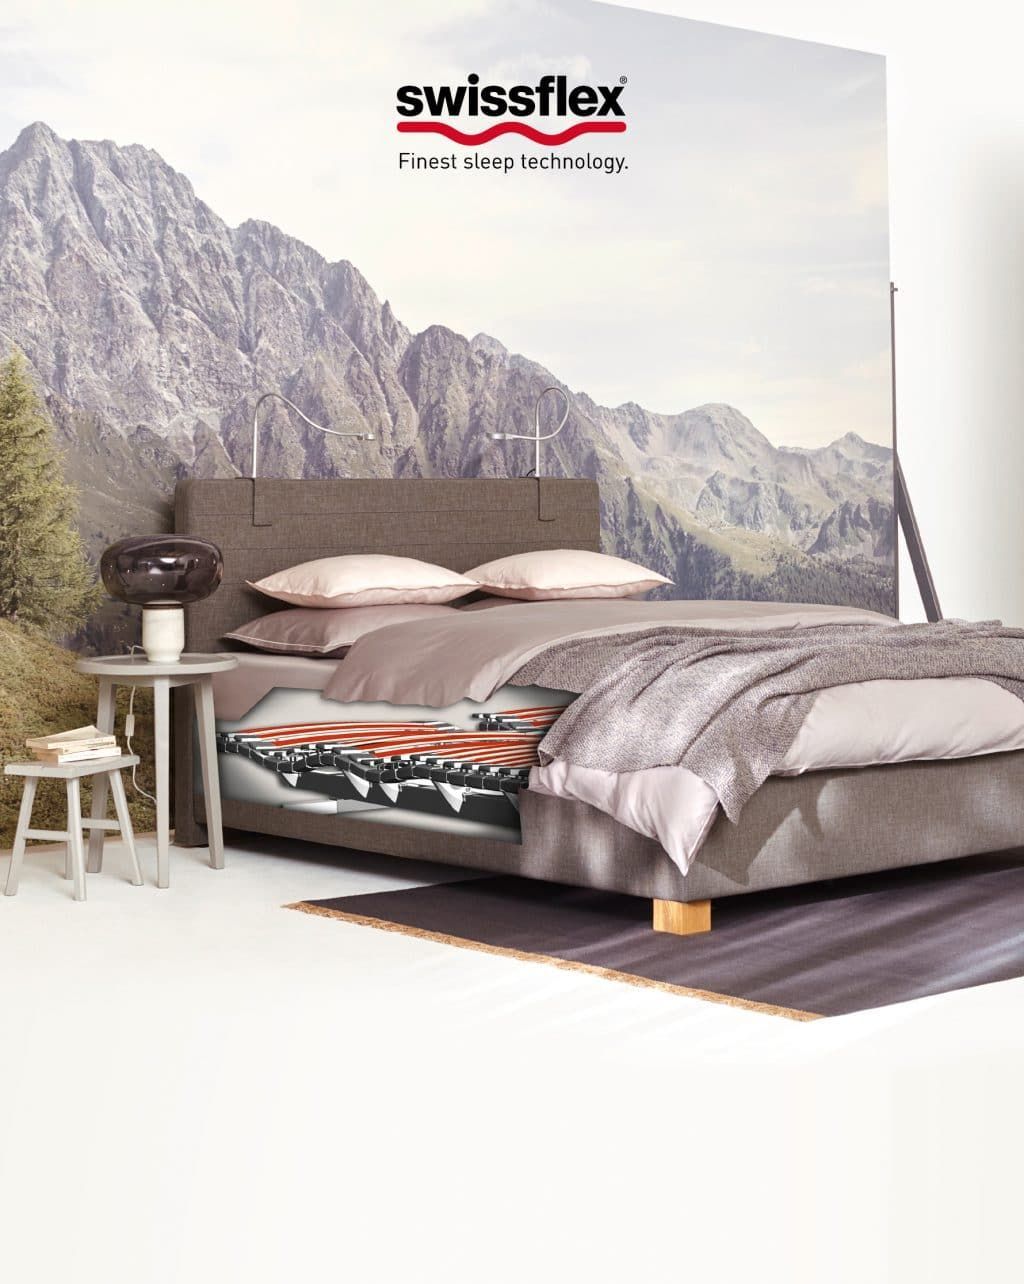 ein Bett in einem Schlafzimmer mit einem Berg im Hintergrund.